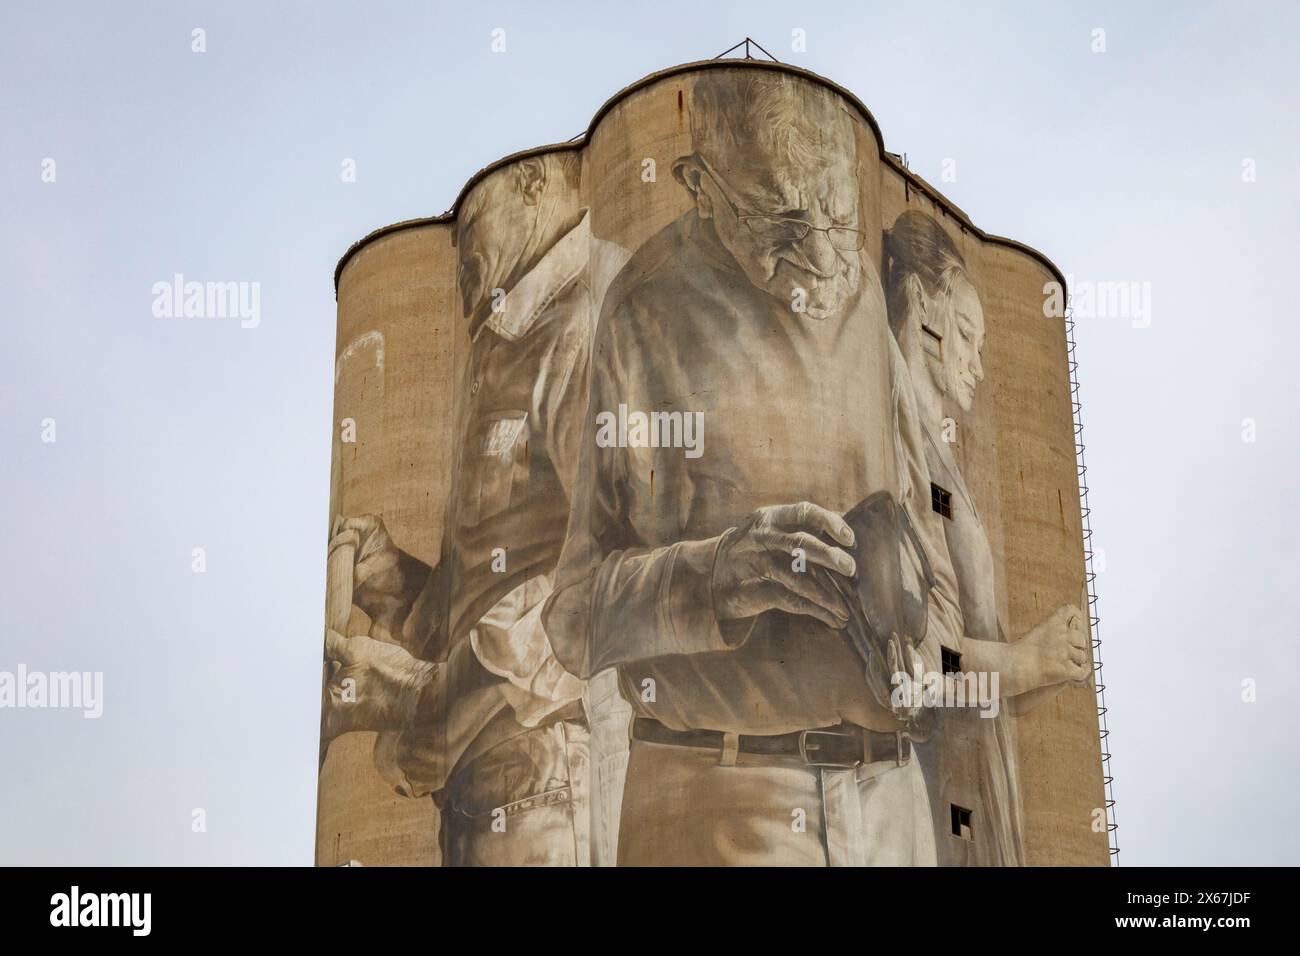 Fort Dodge, Iowa - Ein Wandbild am stillgelegten Fort Dodge Grain Terminal zeigt sieben Figuren, die die Bevölkerung der Gemeinde repräsentieren. Es wurde von Au gemalt Stockfoto